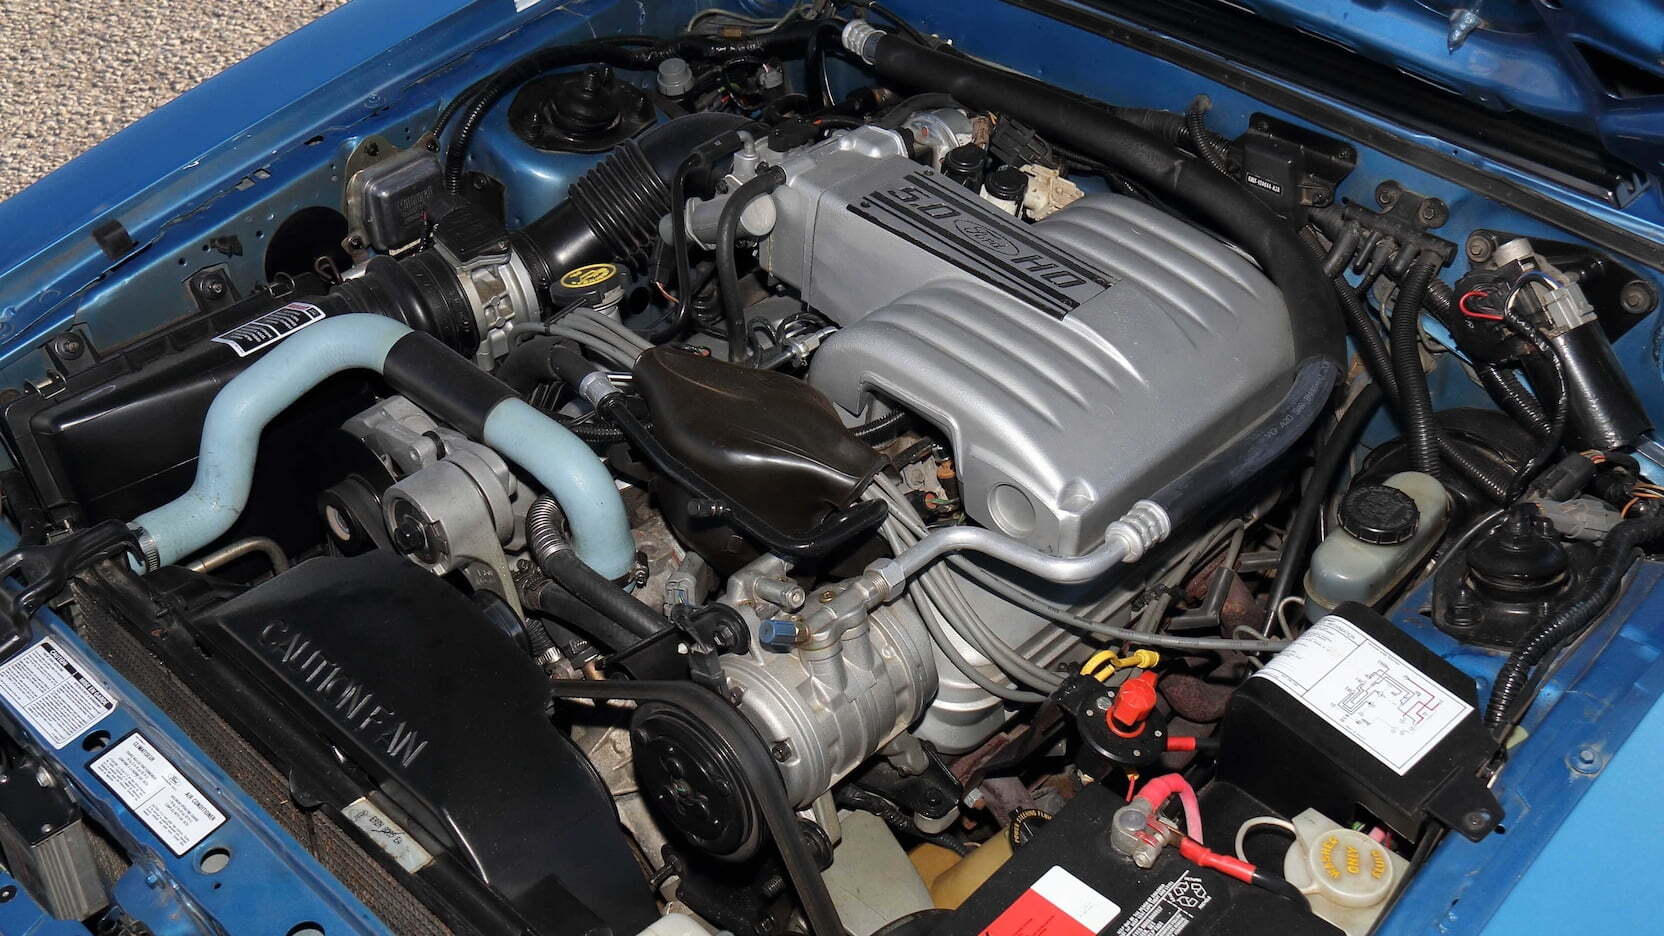 1989 Ford Mustang SSP Police Car оснащен 5-литровым 203-сильным мотором V8